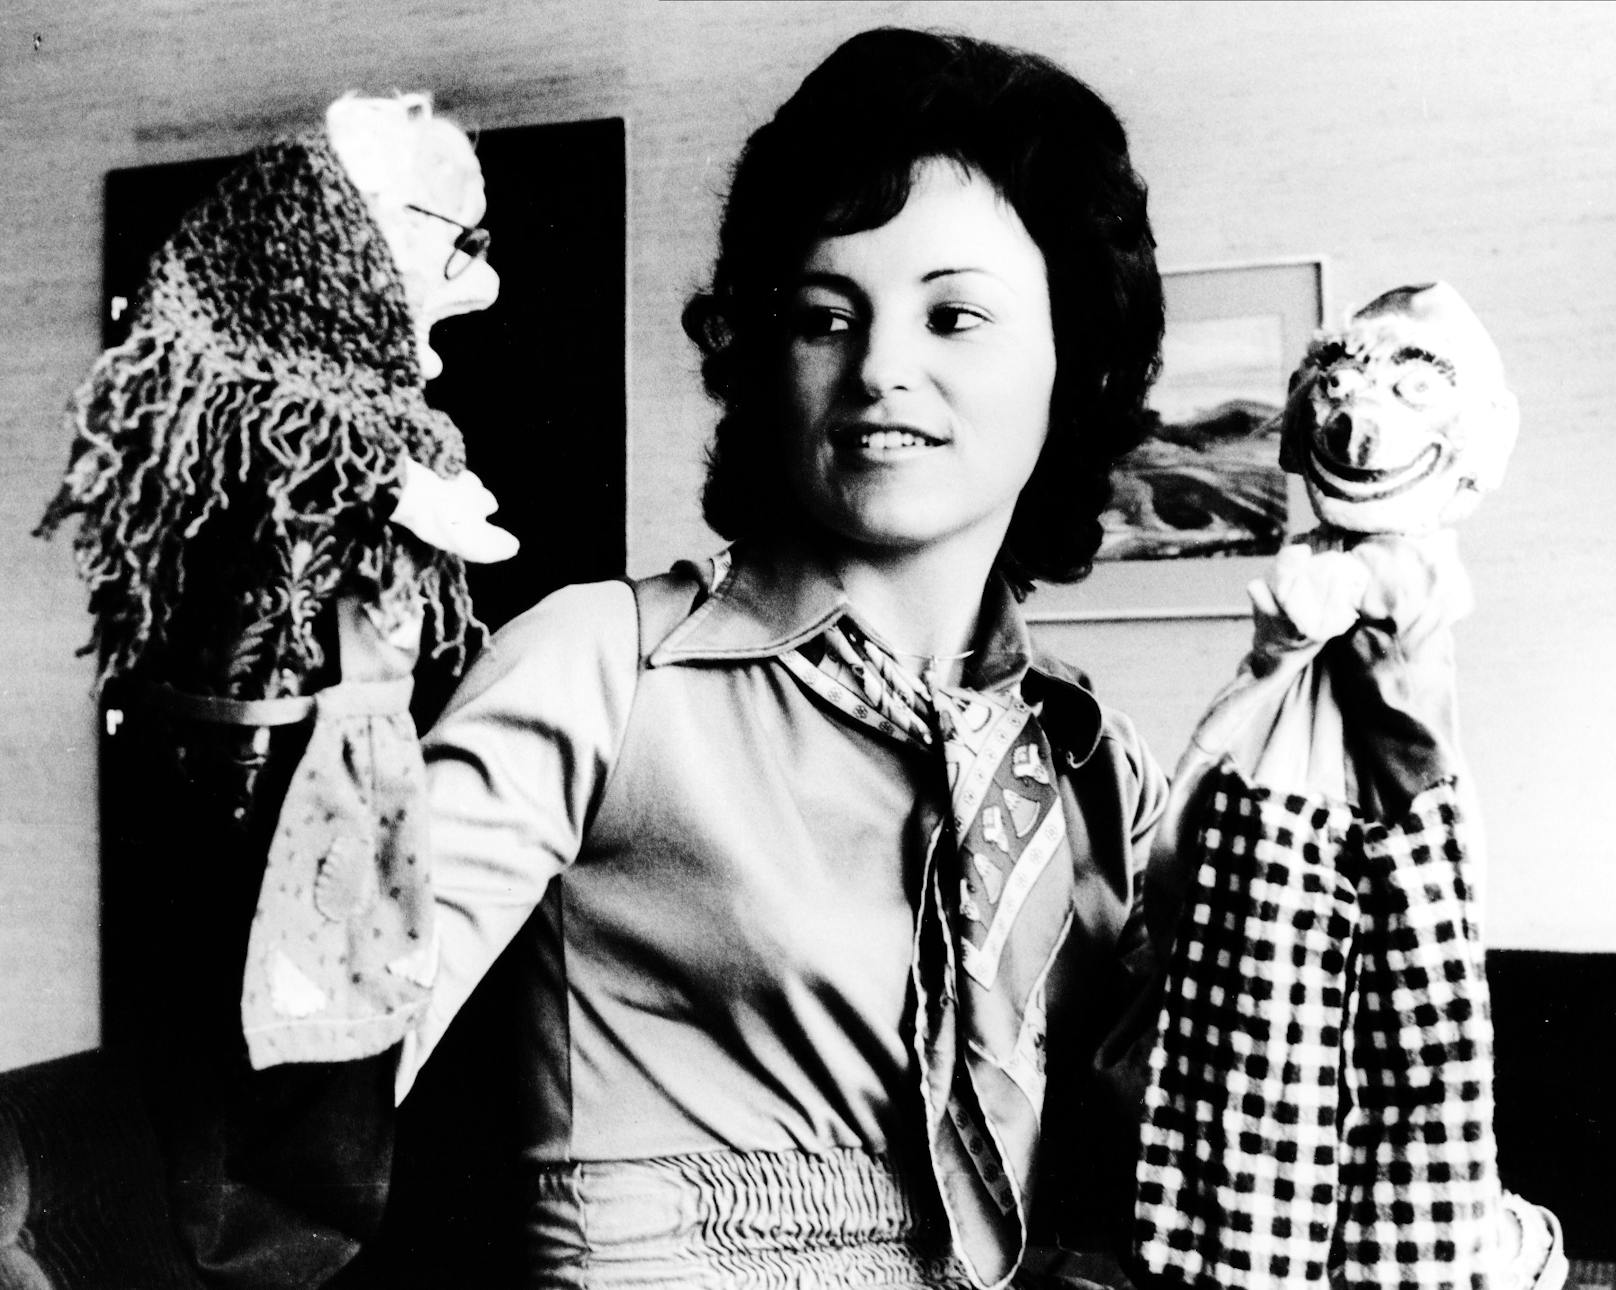 Das ist ihre ganz persönliche Erinnerung an den Kasperl: ein Bild von früher, Theater-Gründerin Christa Koinig mit ihren Puppen.